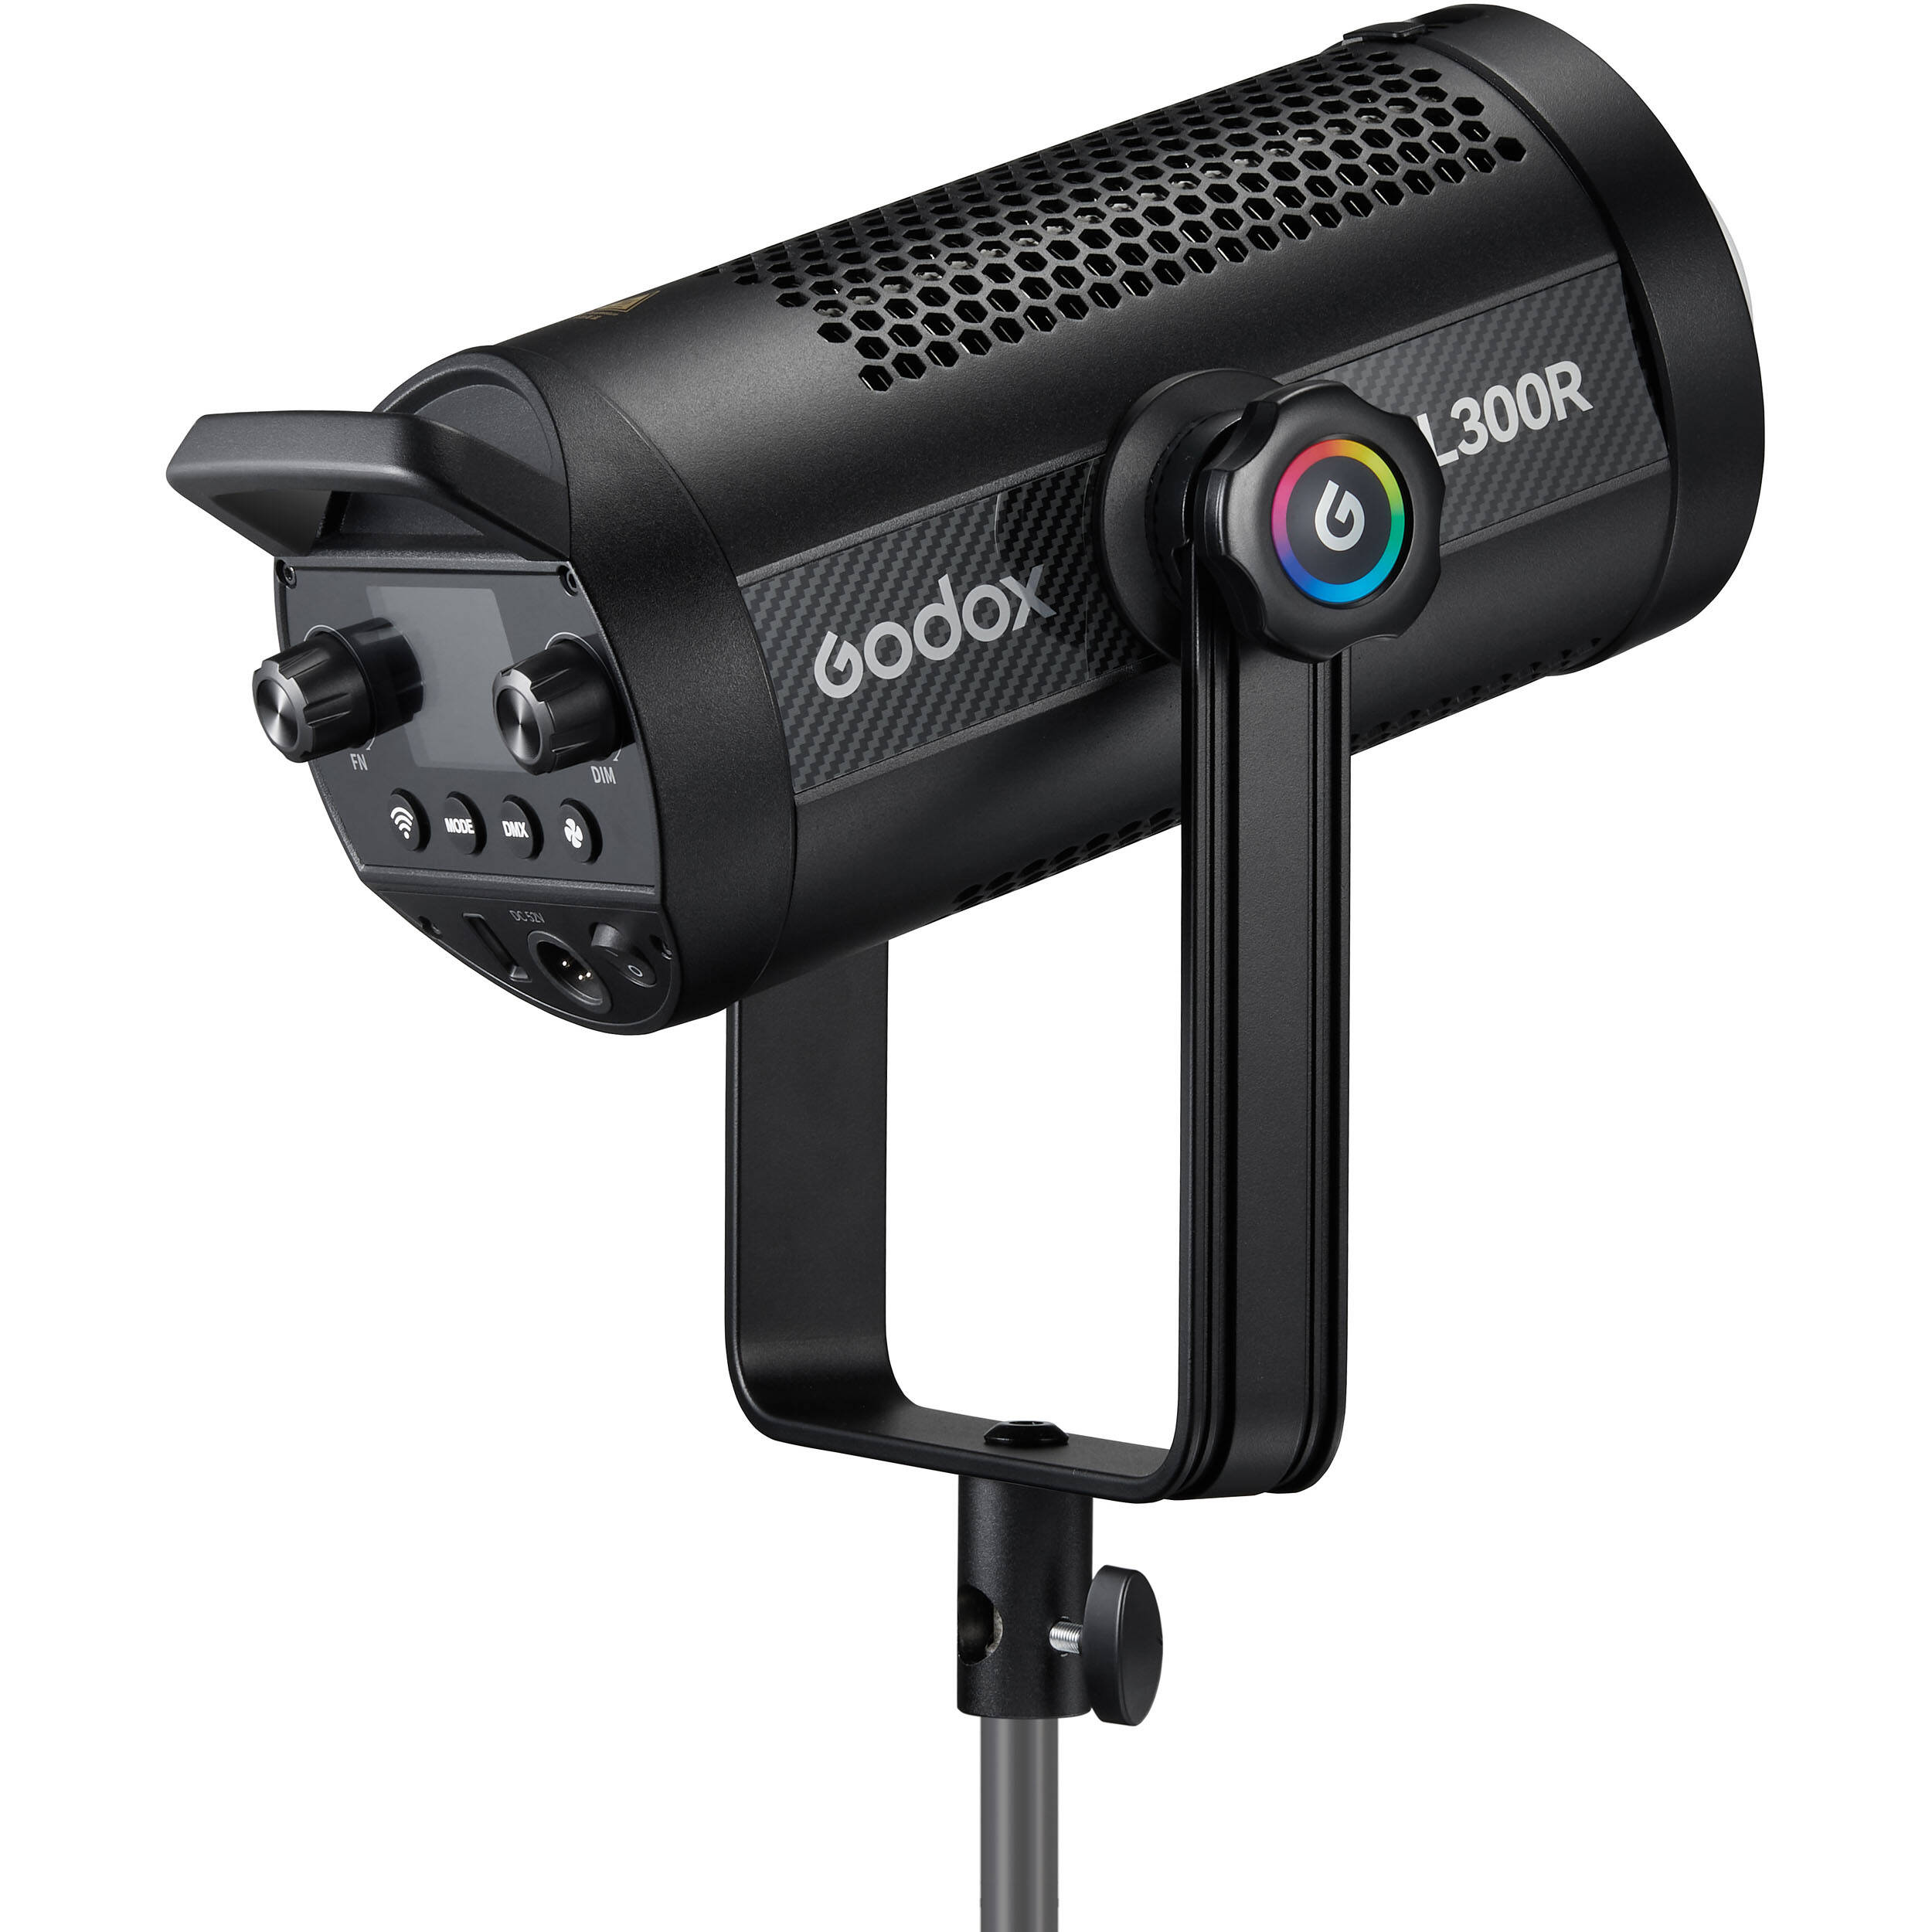    Godox SL300R   Ultra-mart